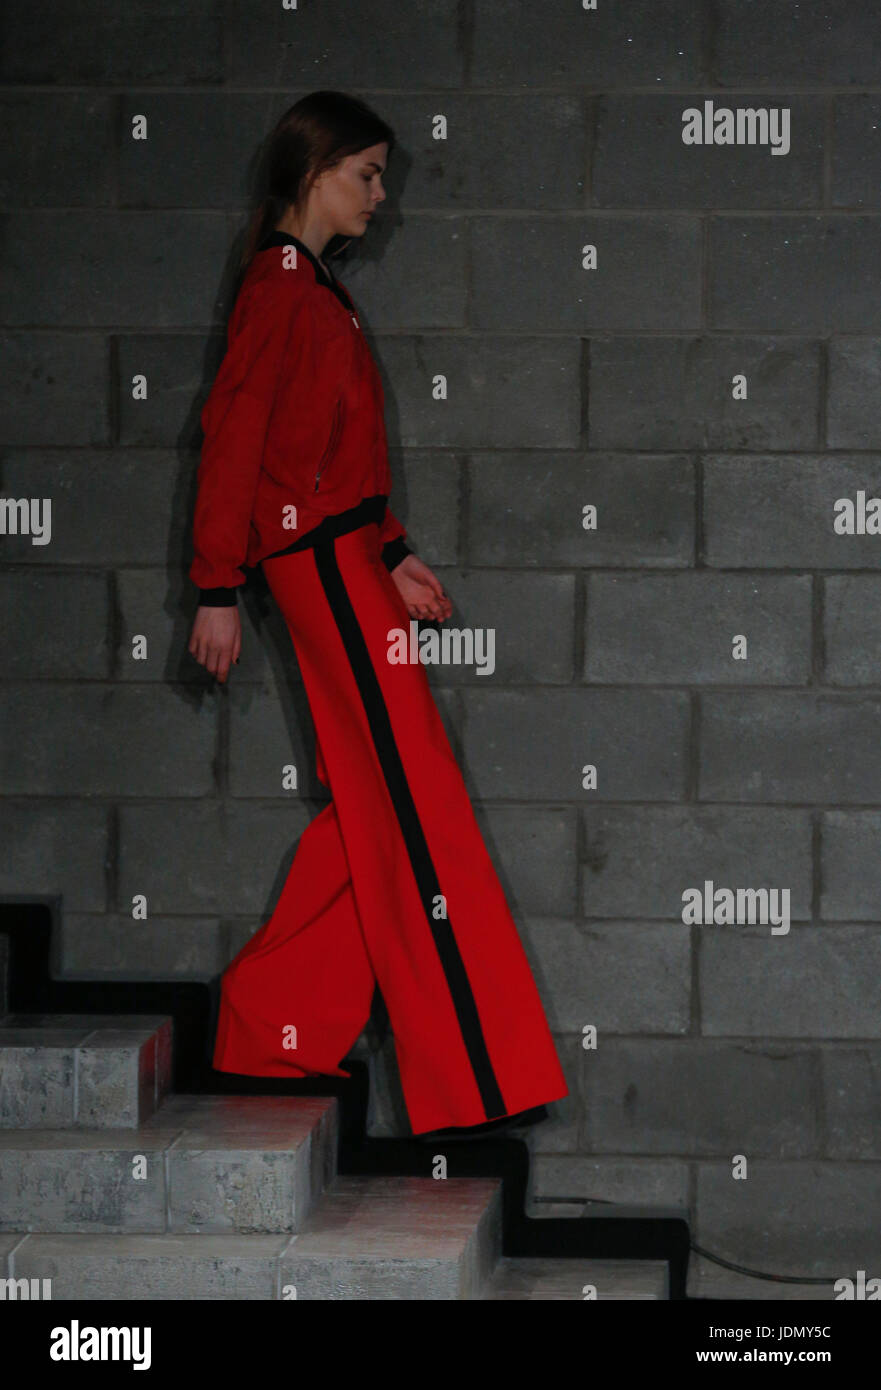 Amanda Wakeley AW16 catwalk au London Fashion Week. Balades dans des modèles d'espace d'un défilé de mode britannique lieu principal Conseil Soho Brewer Banque D'Images